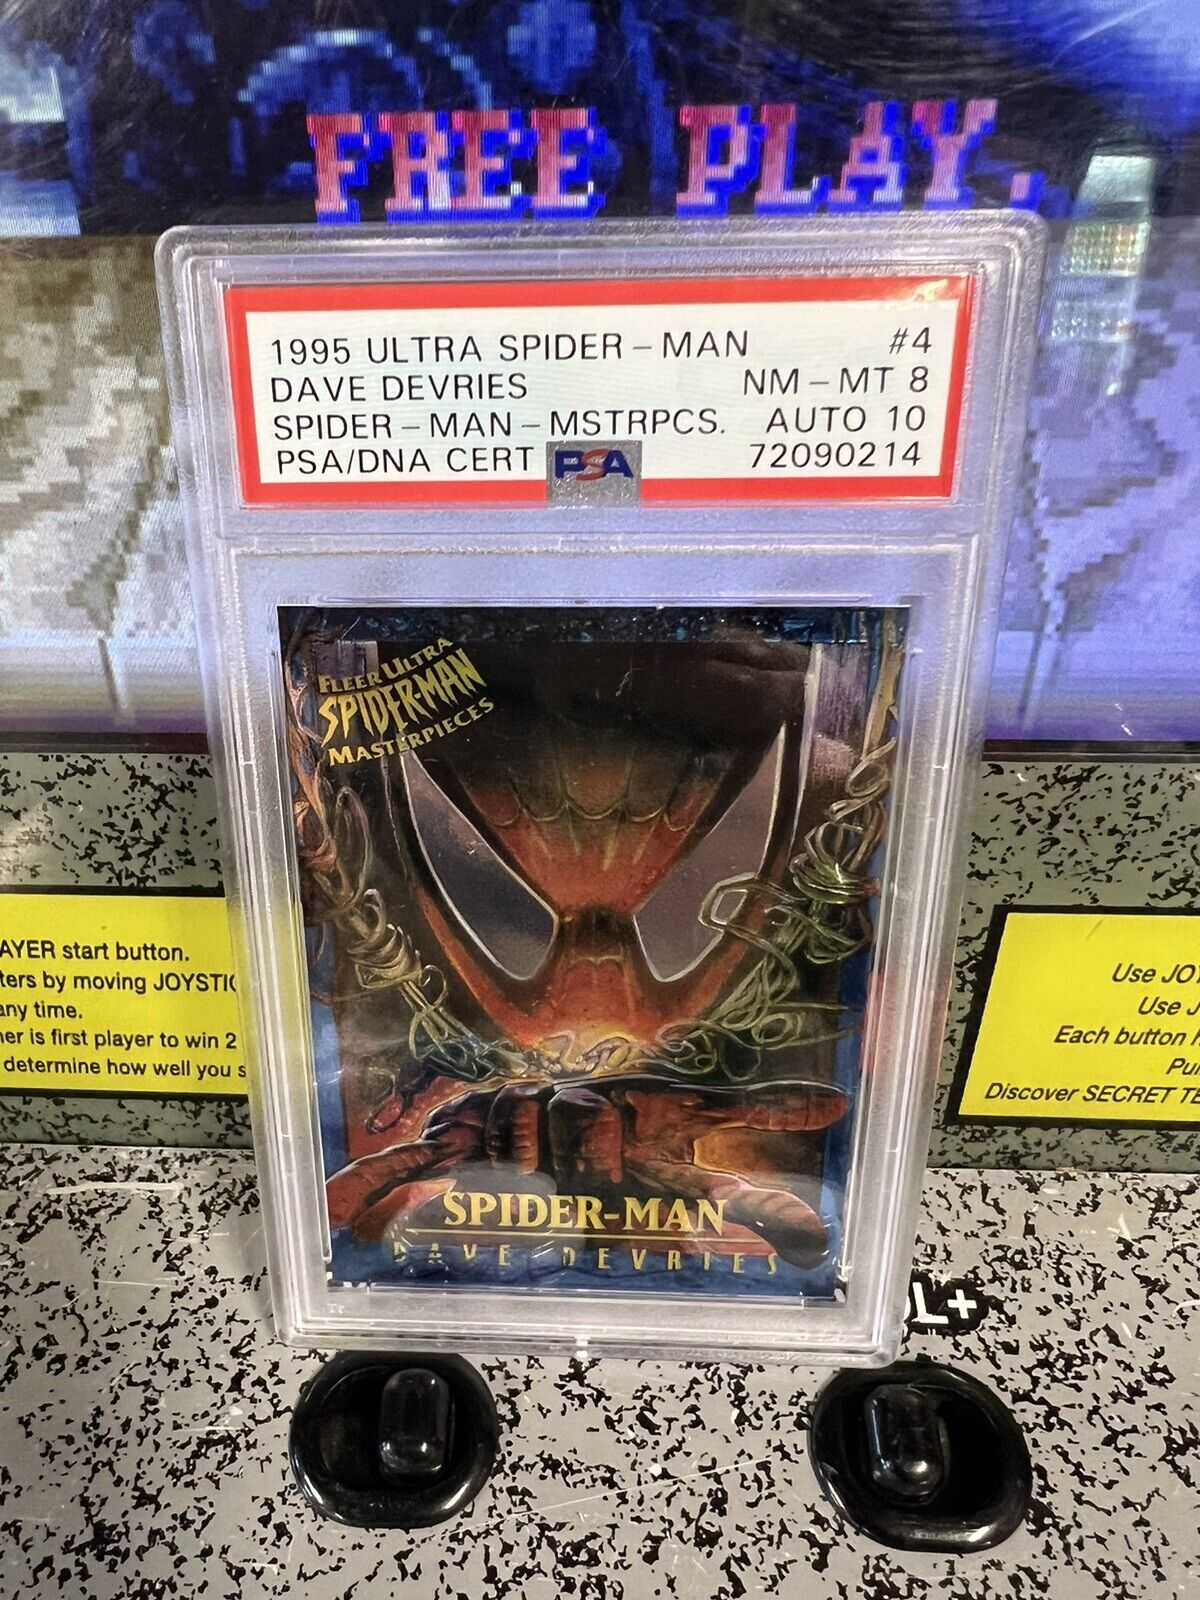 1995 Ultra Spider-Man Spiderman Masterpieces PSA 8 NM-MT Auto 10 Dave DeVries